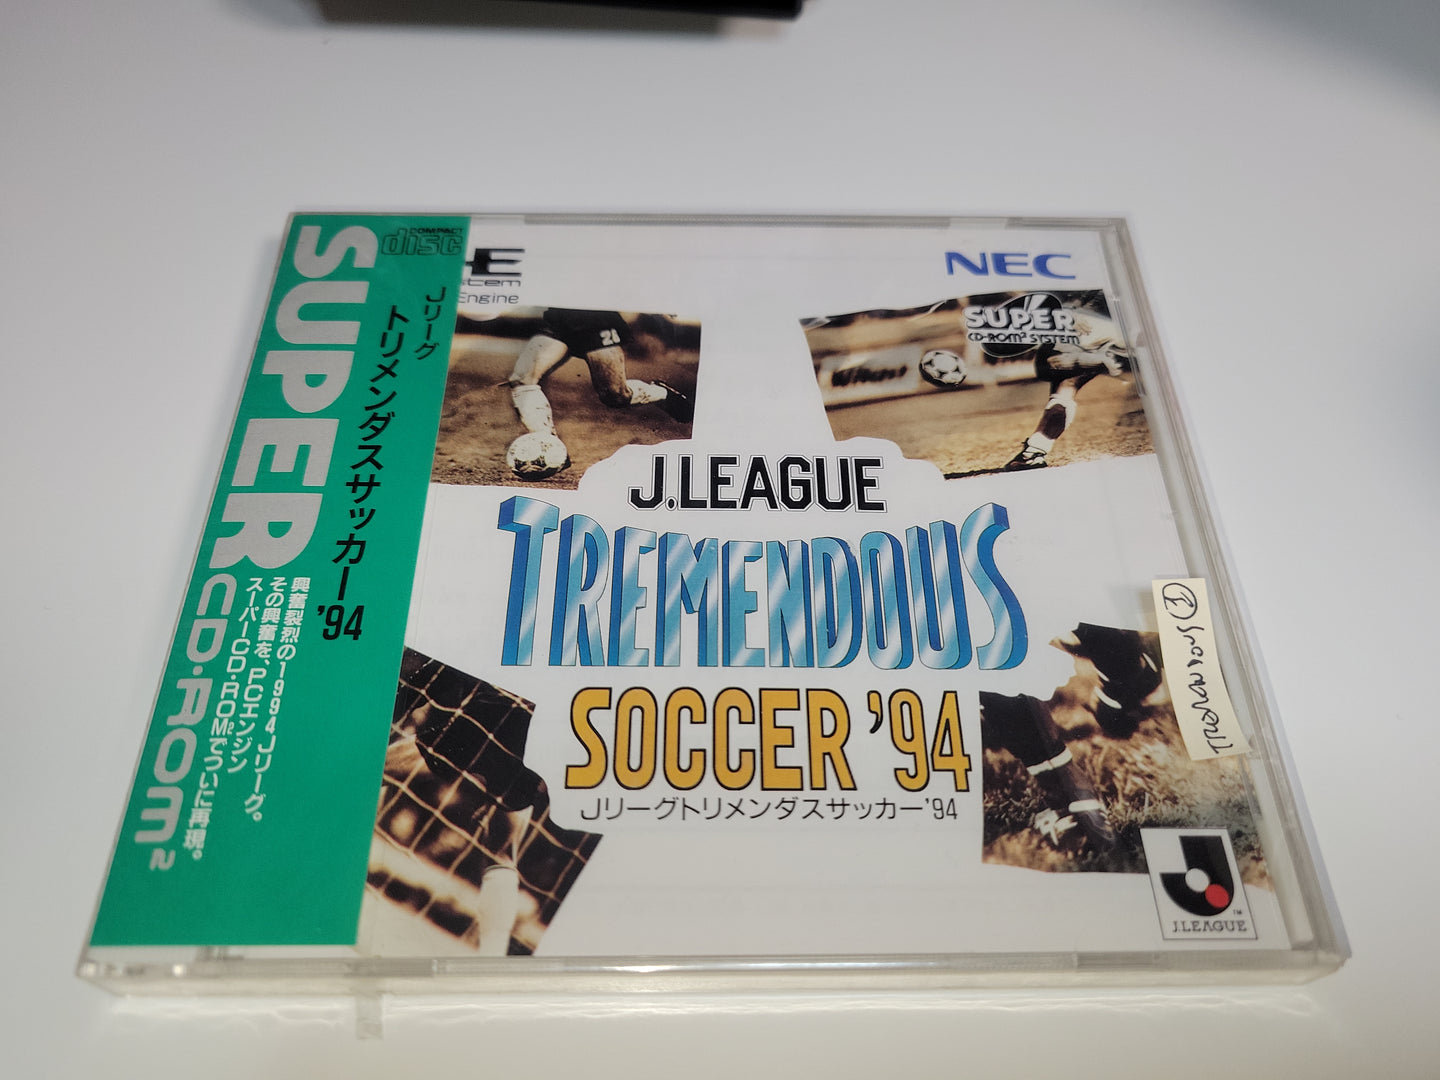 J.League Tremendous Soccer '94 - Nec Pce PcEngine